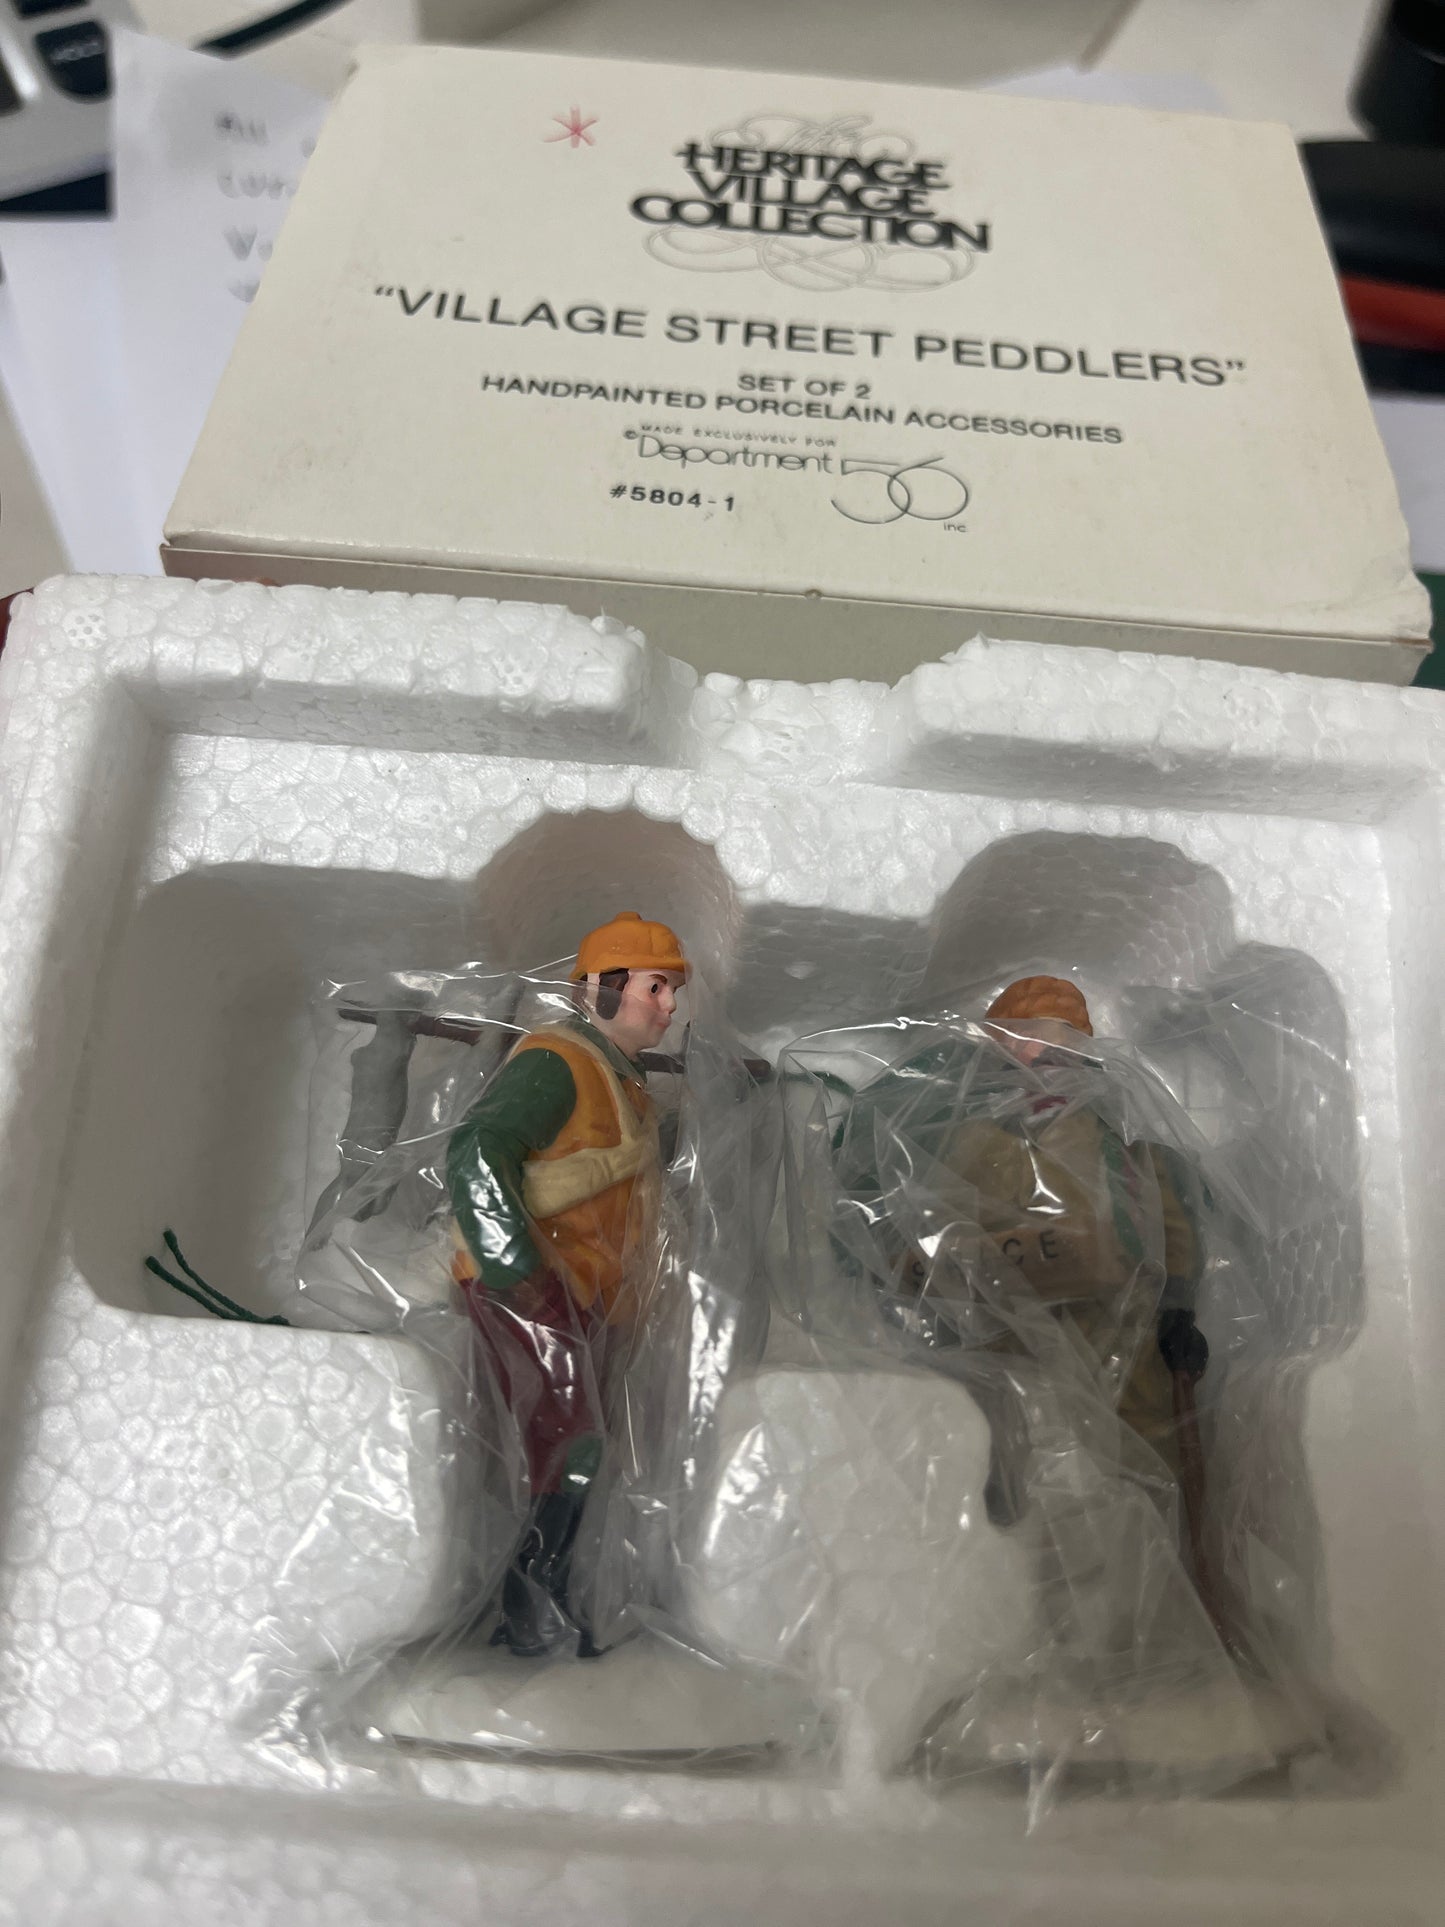 Village Street Peddlers